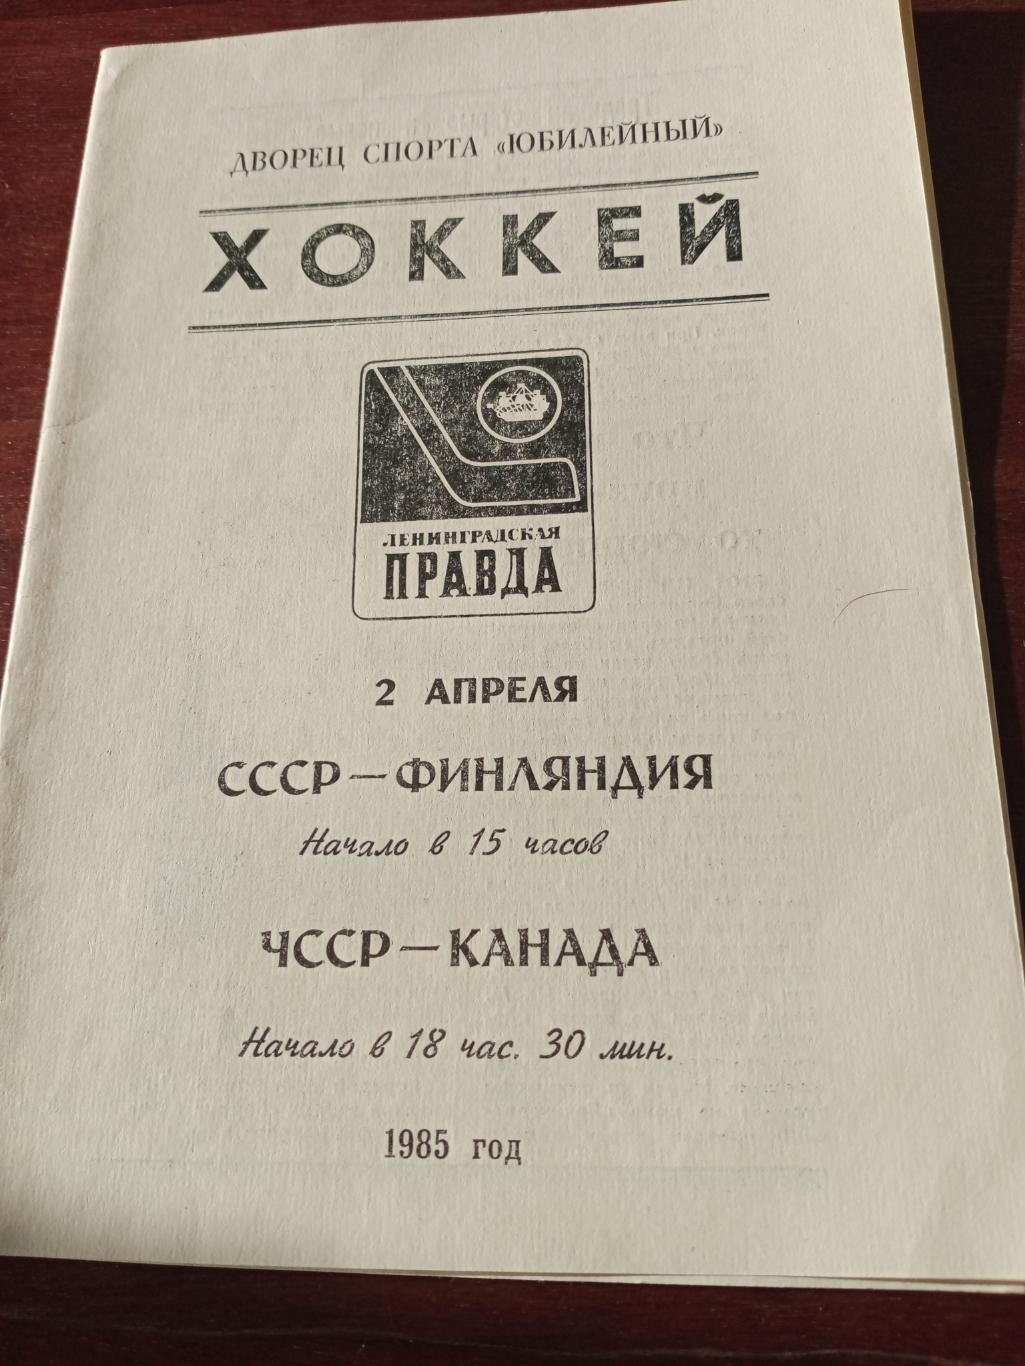 Турнир Ленинградская правда. 2 апреля 1985 год